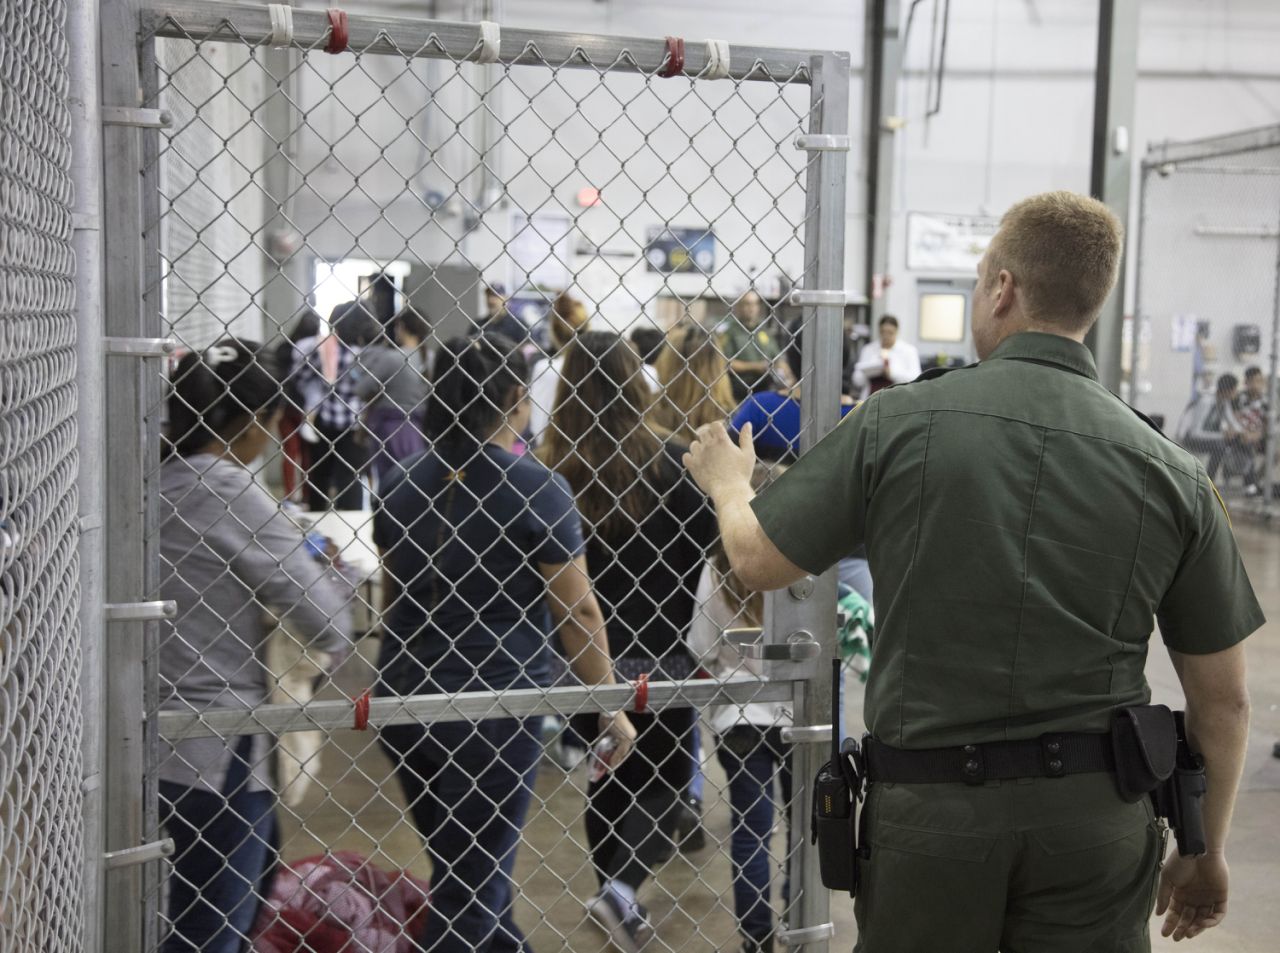 Inmigrantes que cruzaron la frontera de manera ilegal tras ser detenidos por agentes de la Patrulla Fronteriza de los Estados Unidos en una crcel en el Centro de Procesamiento Central en McAllen, Texas, el 17 de junio de 2018. (Foto: Patrulla Fronteriza de los Estados Unidos/Handout/Agencia Anadolu/Getty Images)